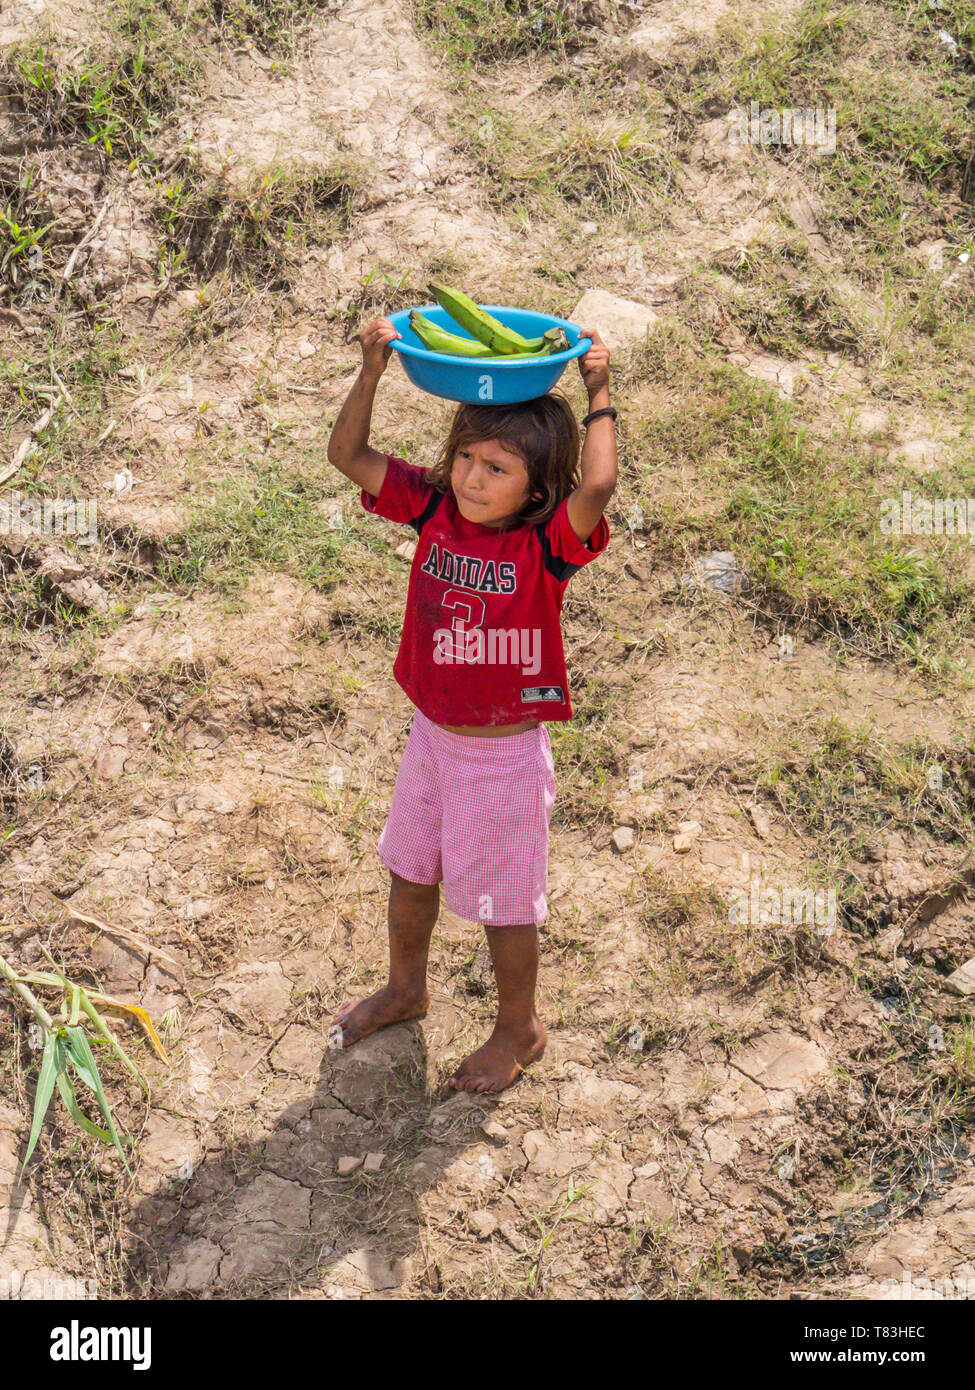 Kleines Dorf von Amazonas, Peru - Dec 03, Kinderarbeit. Mädchen Verkauf der Früchte am Ufer des Amazonas Stockfotografie - Alamy